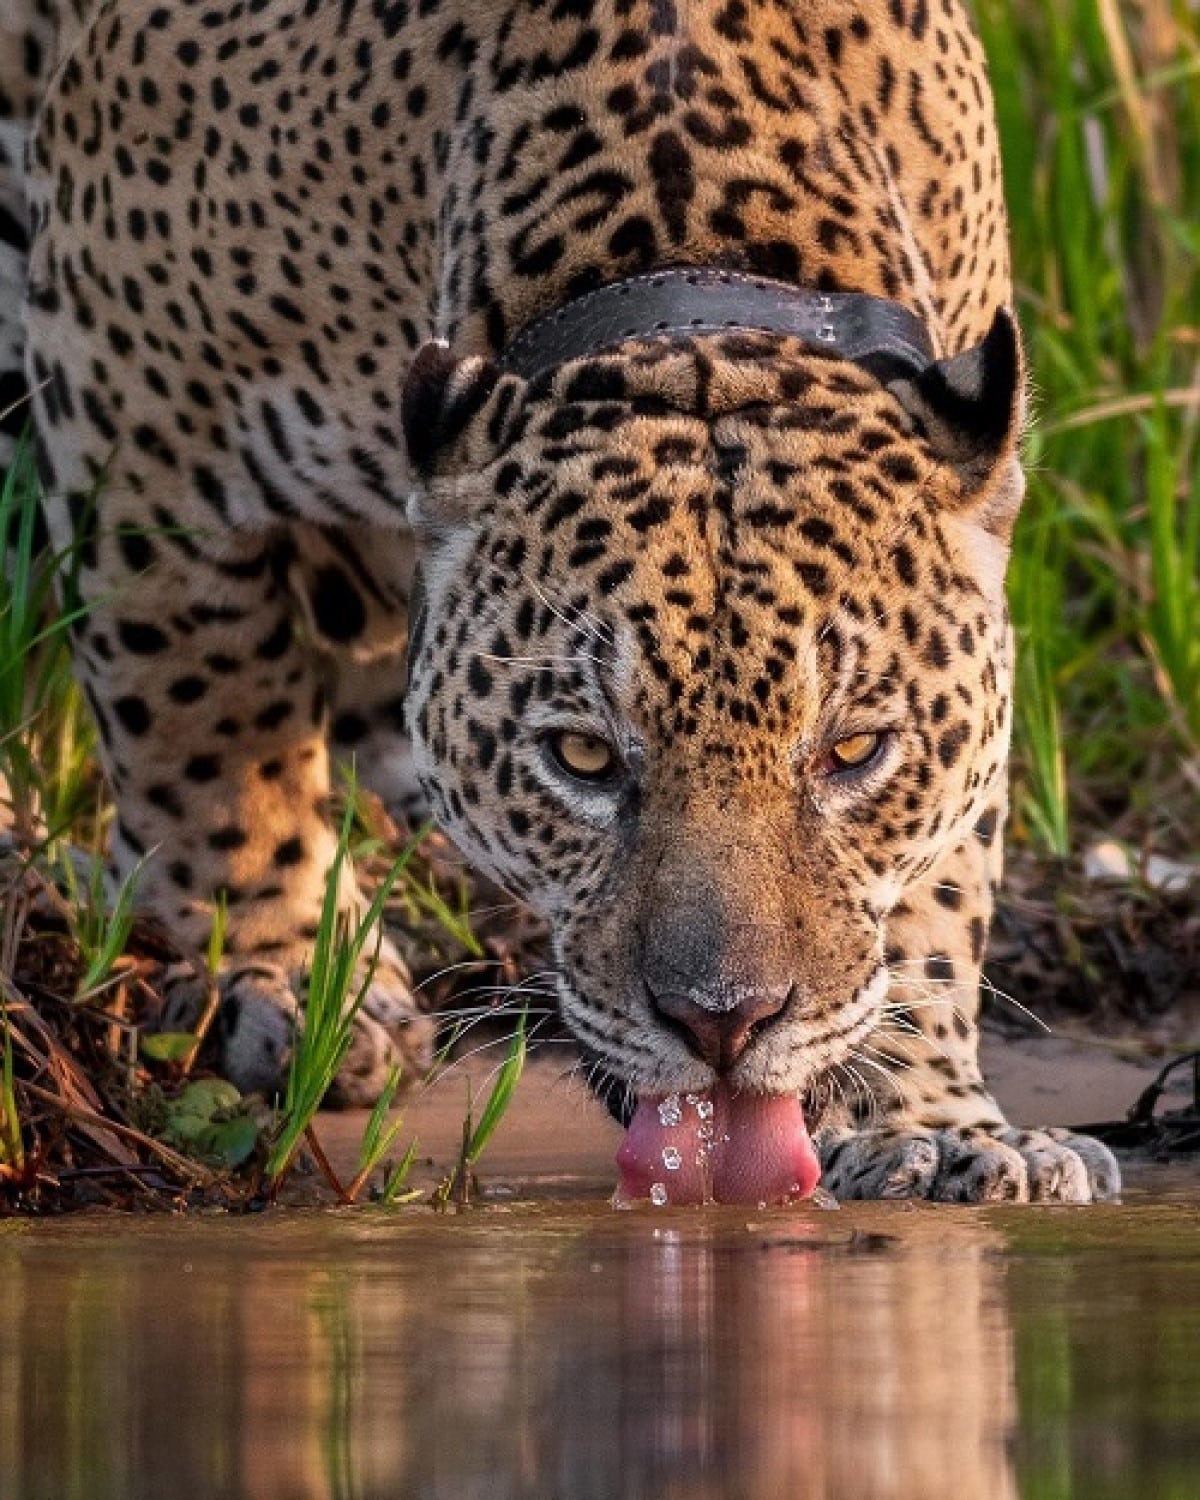 O Pantanal é um dos maiores biomas do mundo e abriga uma grande diversidade de animais, incluindo onças-pintadas.